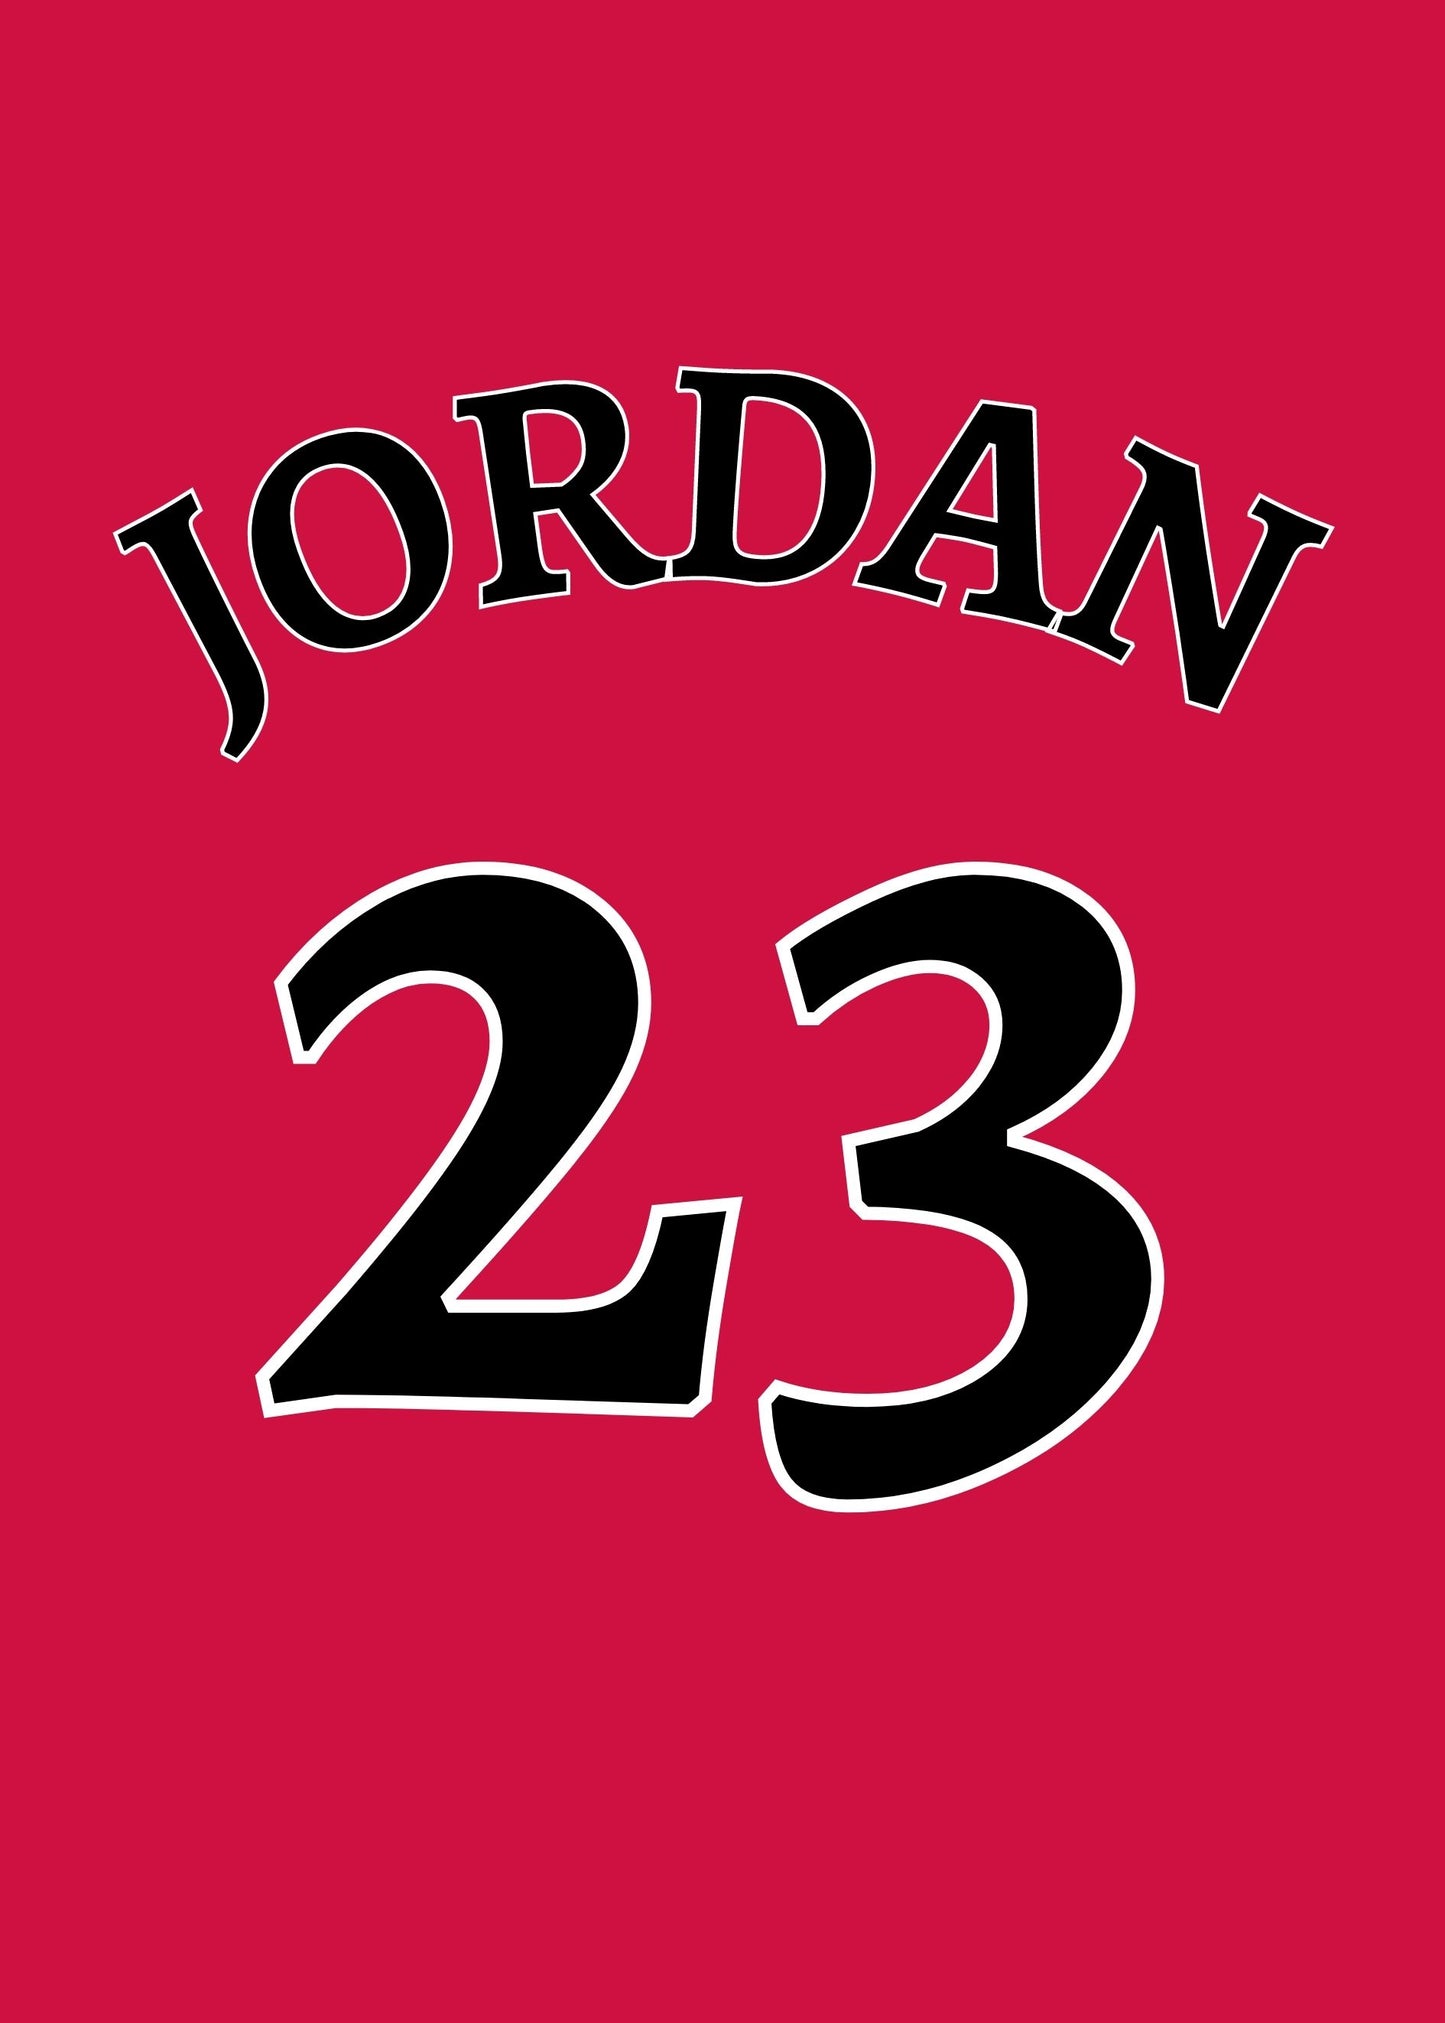 Michael Jordan poster